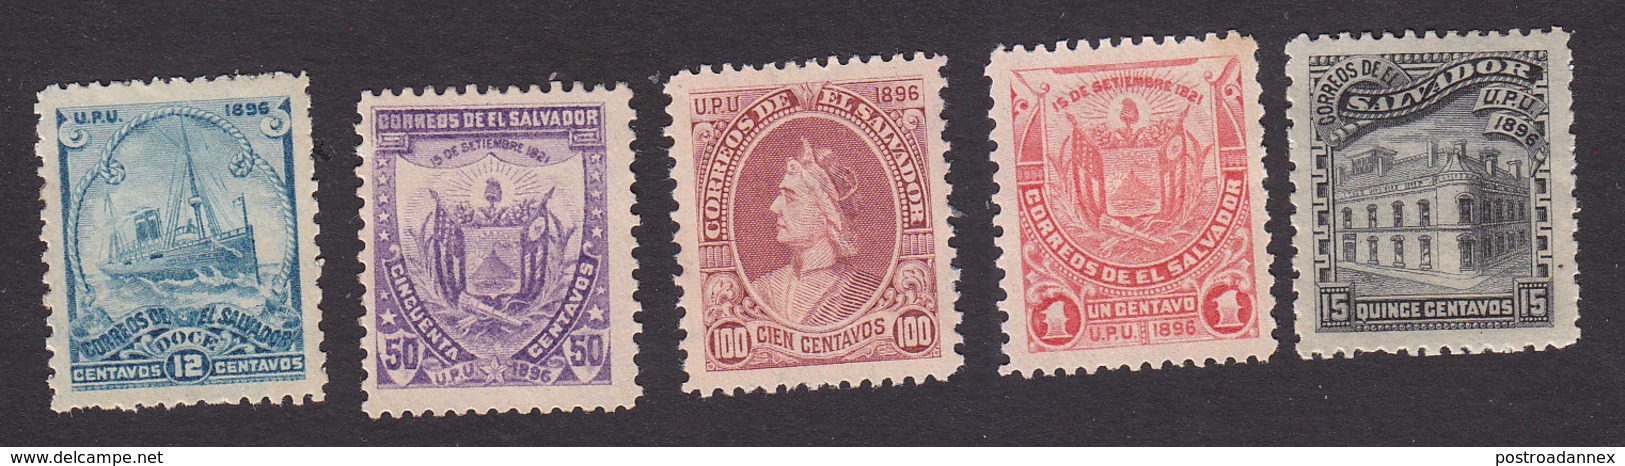 El Salvador, Scott #164, 169, 170, 170A, 170G Reprints, Mint Hinged, Steamship, Arms, Columbus, Post Office, Issued 1897 - El Salvador